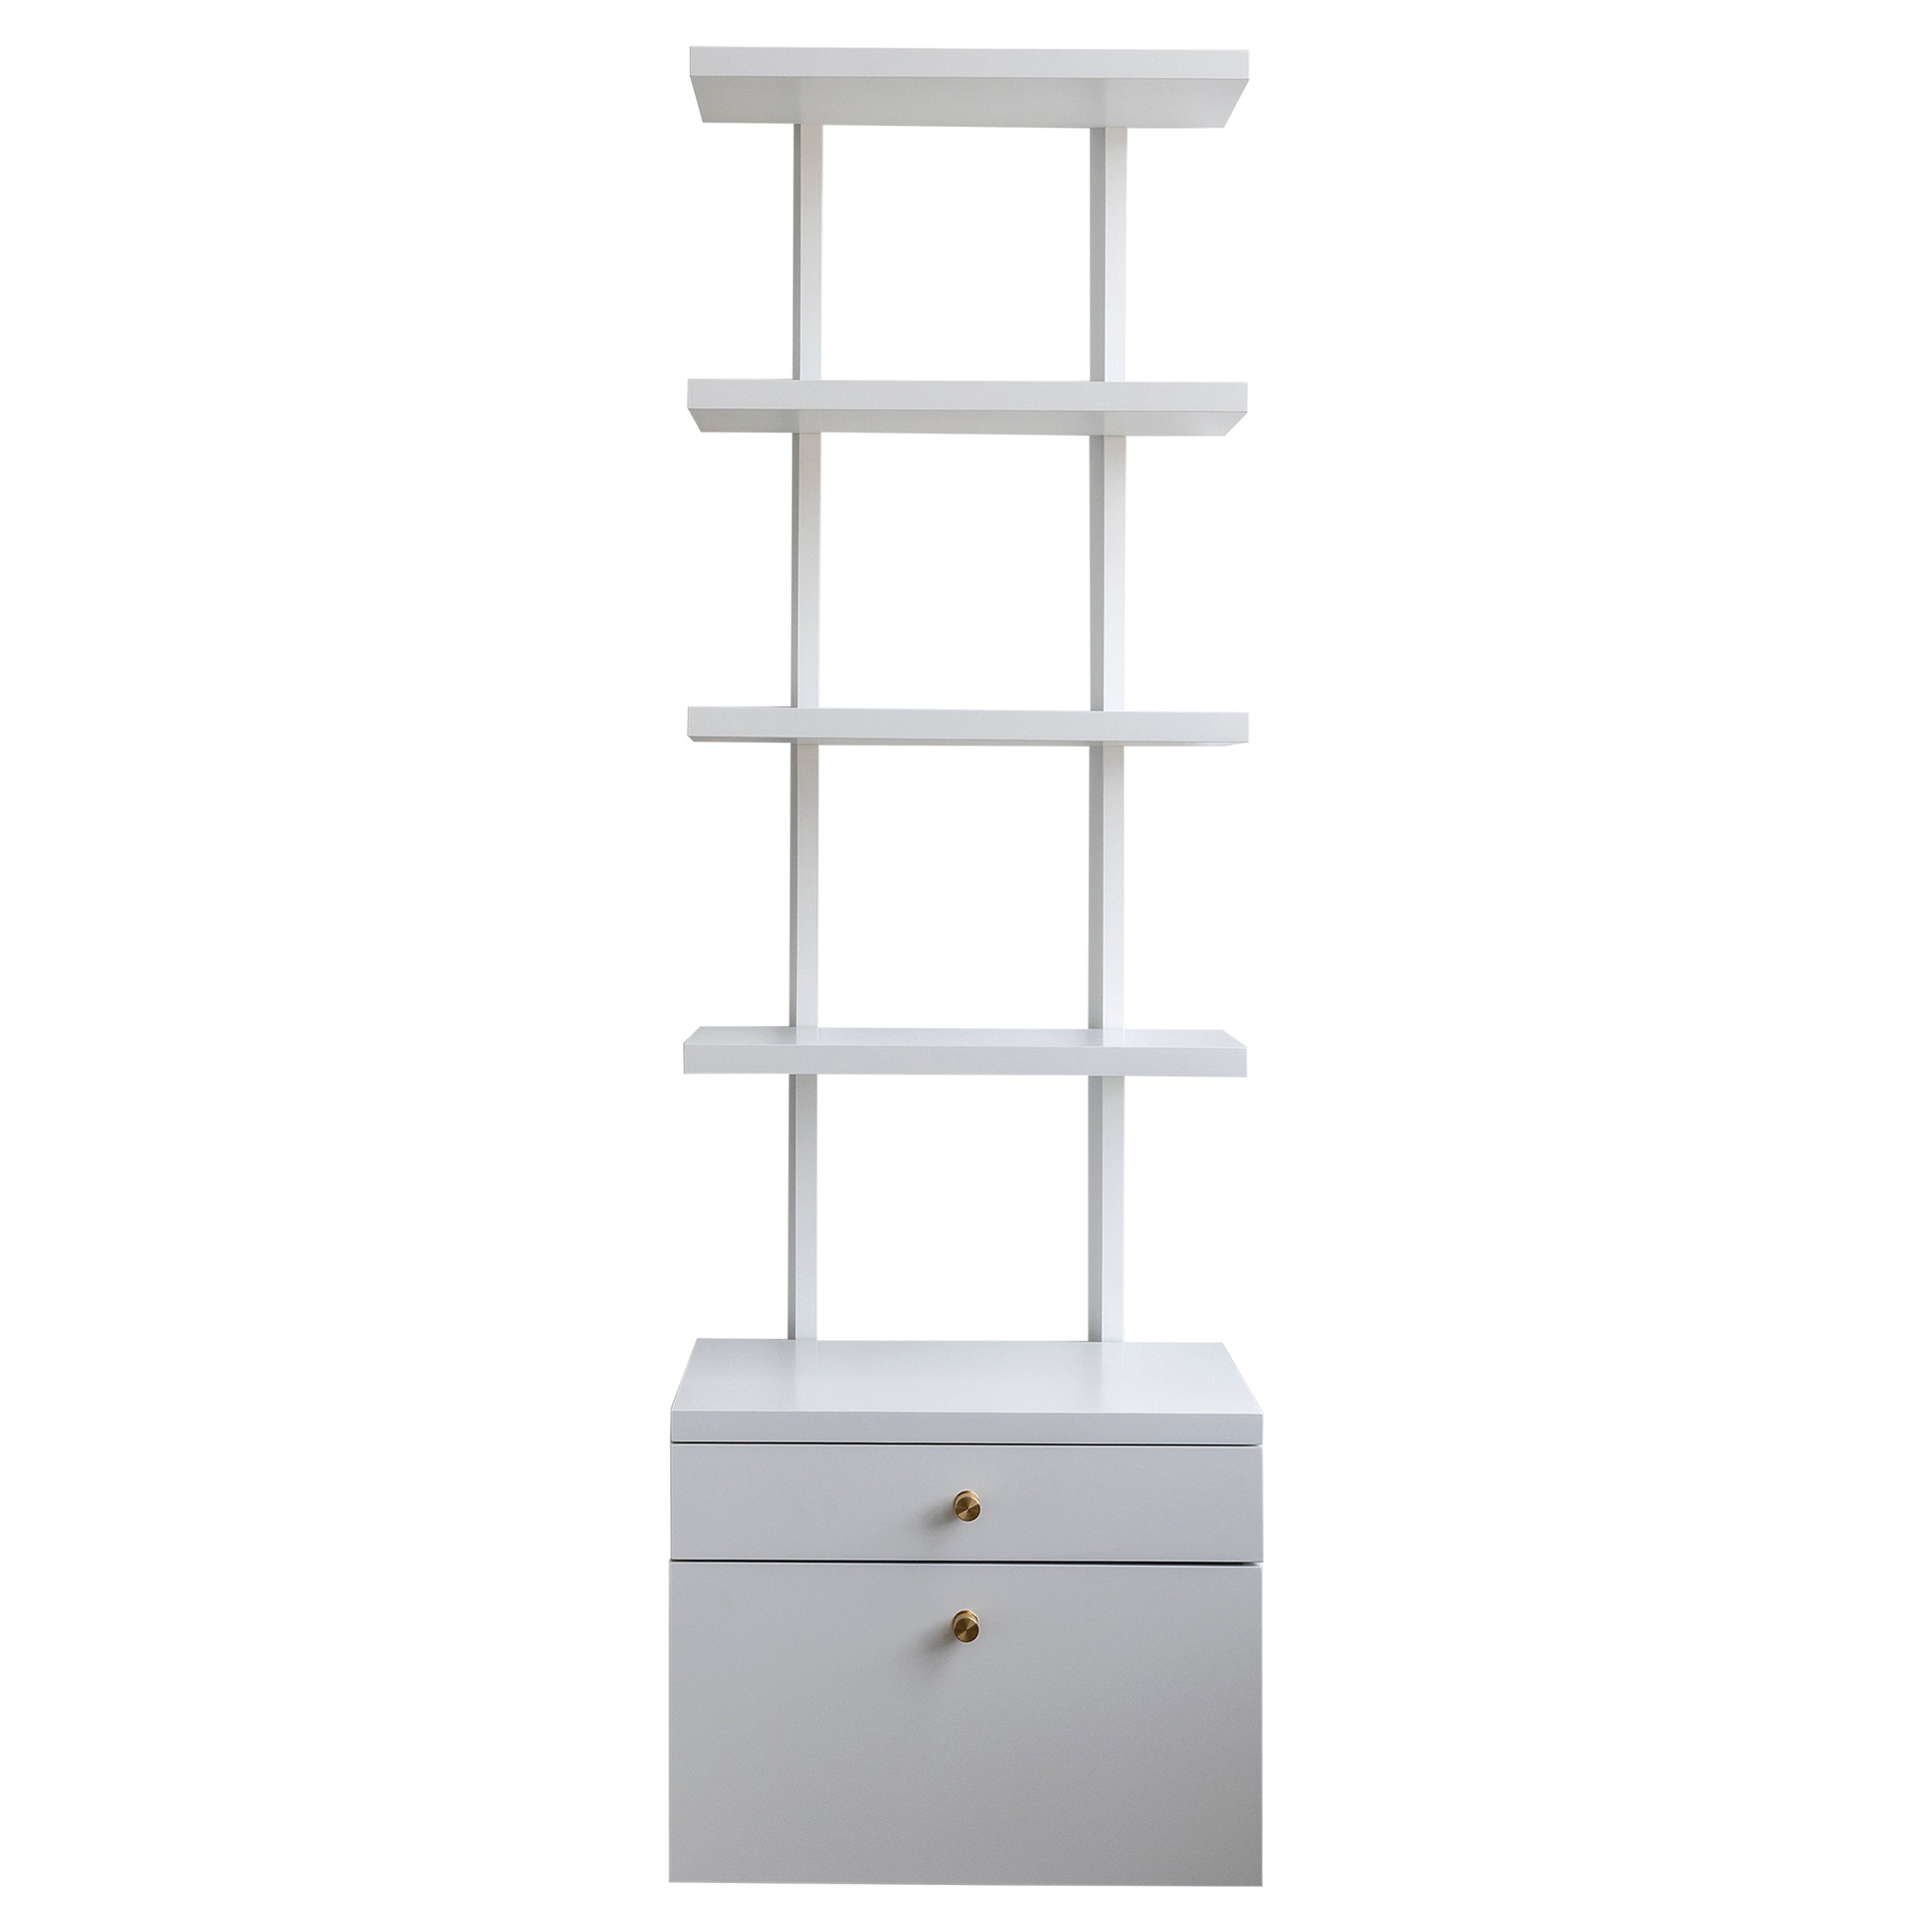 AS6 mueble alto de 24" de ancho con estantes y cajones en lacado blanco